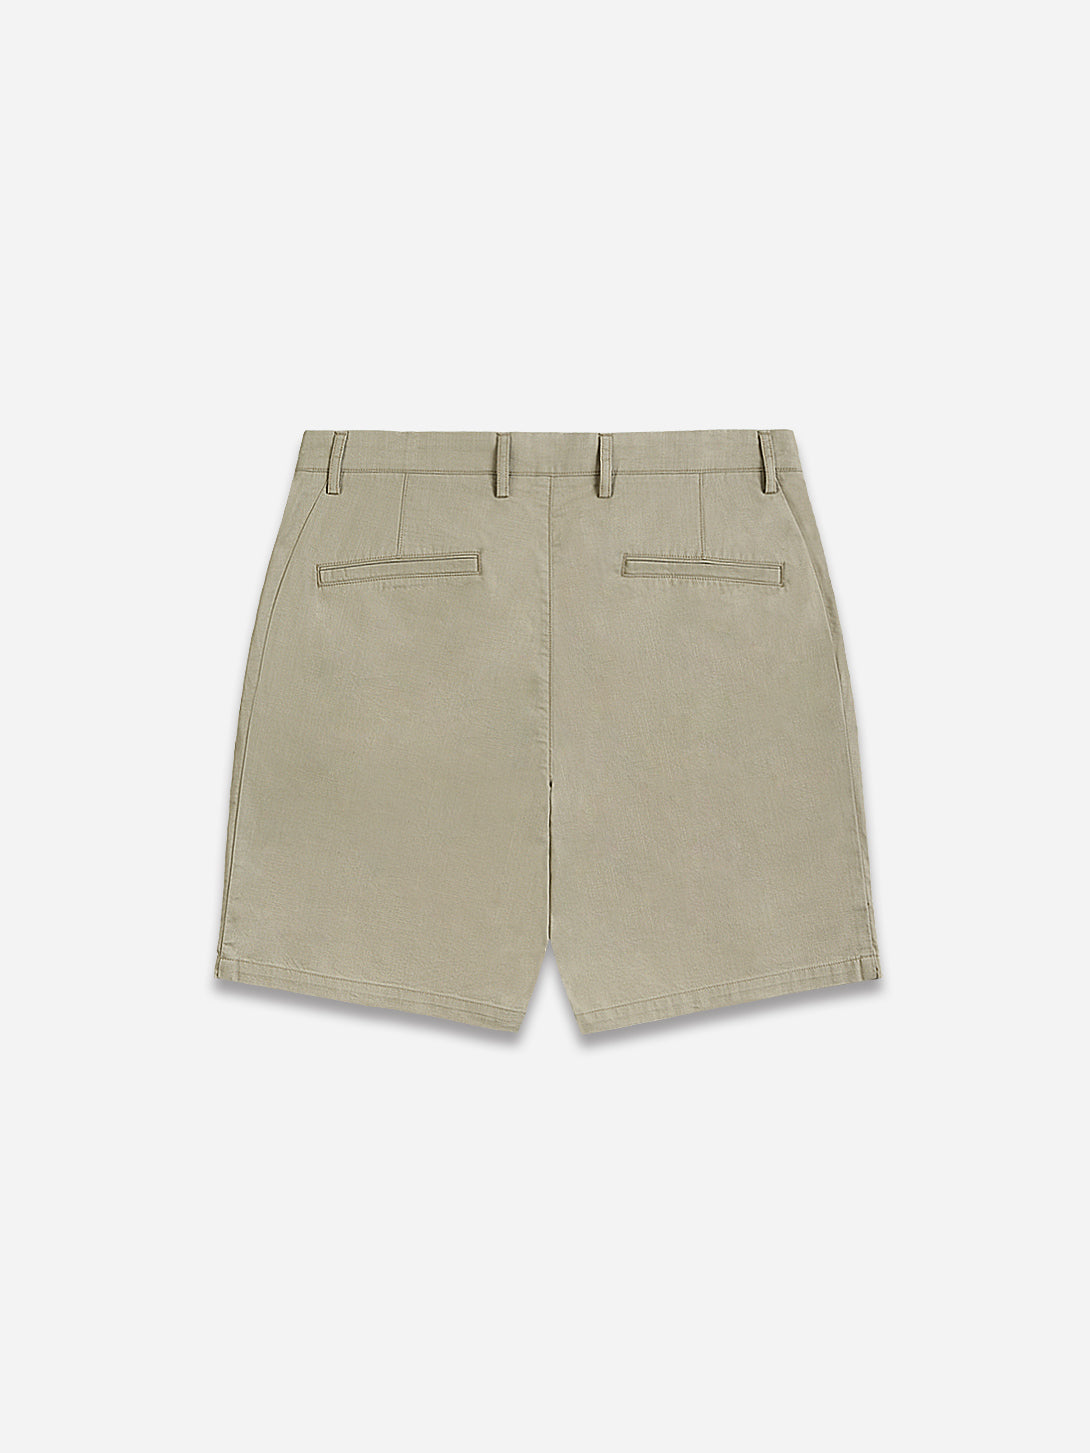 Khaki Modern Cotton Slub Shorts Men's O.N.S SS23